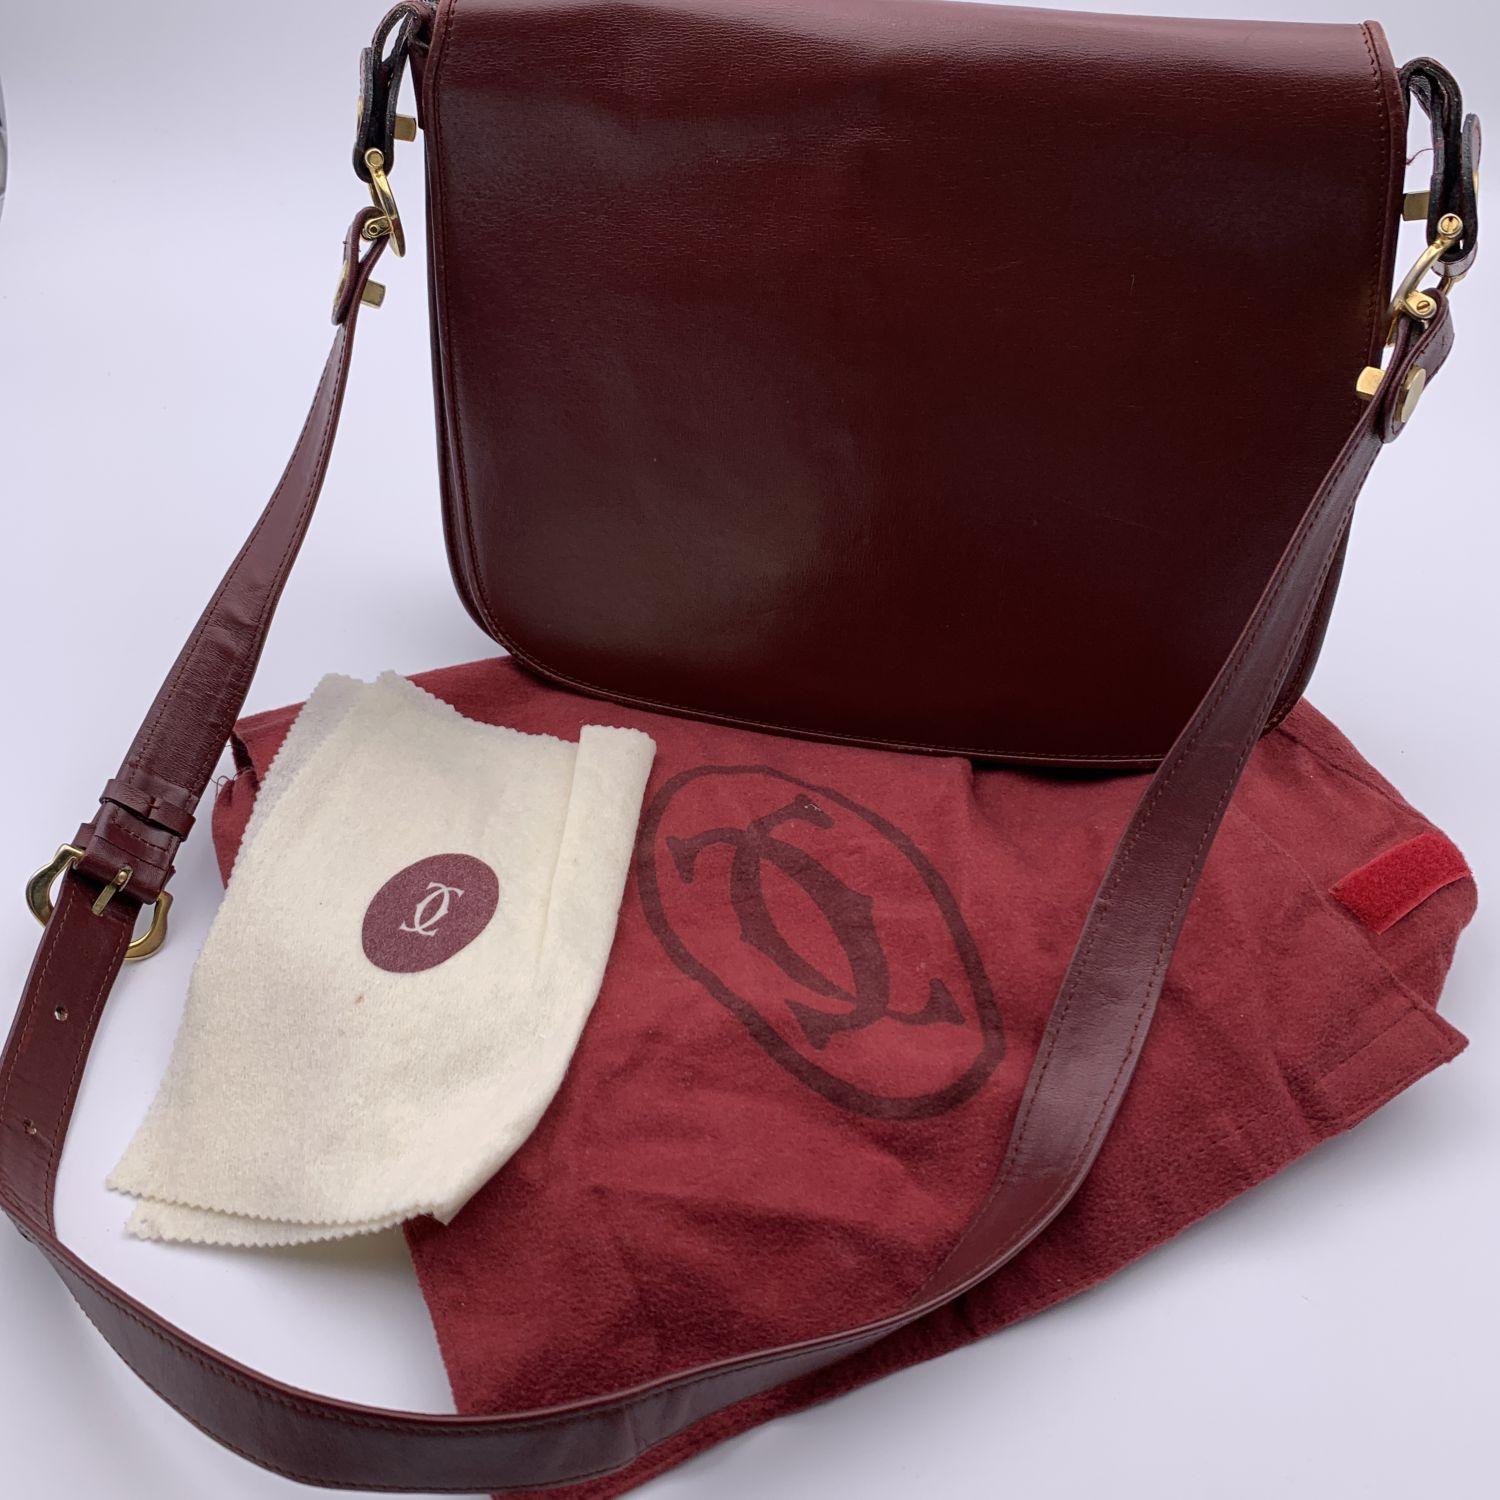 Must de Cartier Vintage Burgundy Leather Flap Shoulder Bag 2